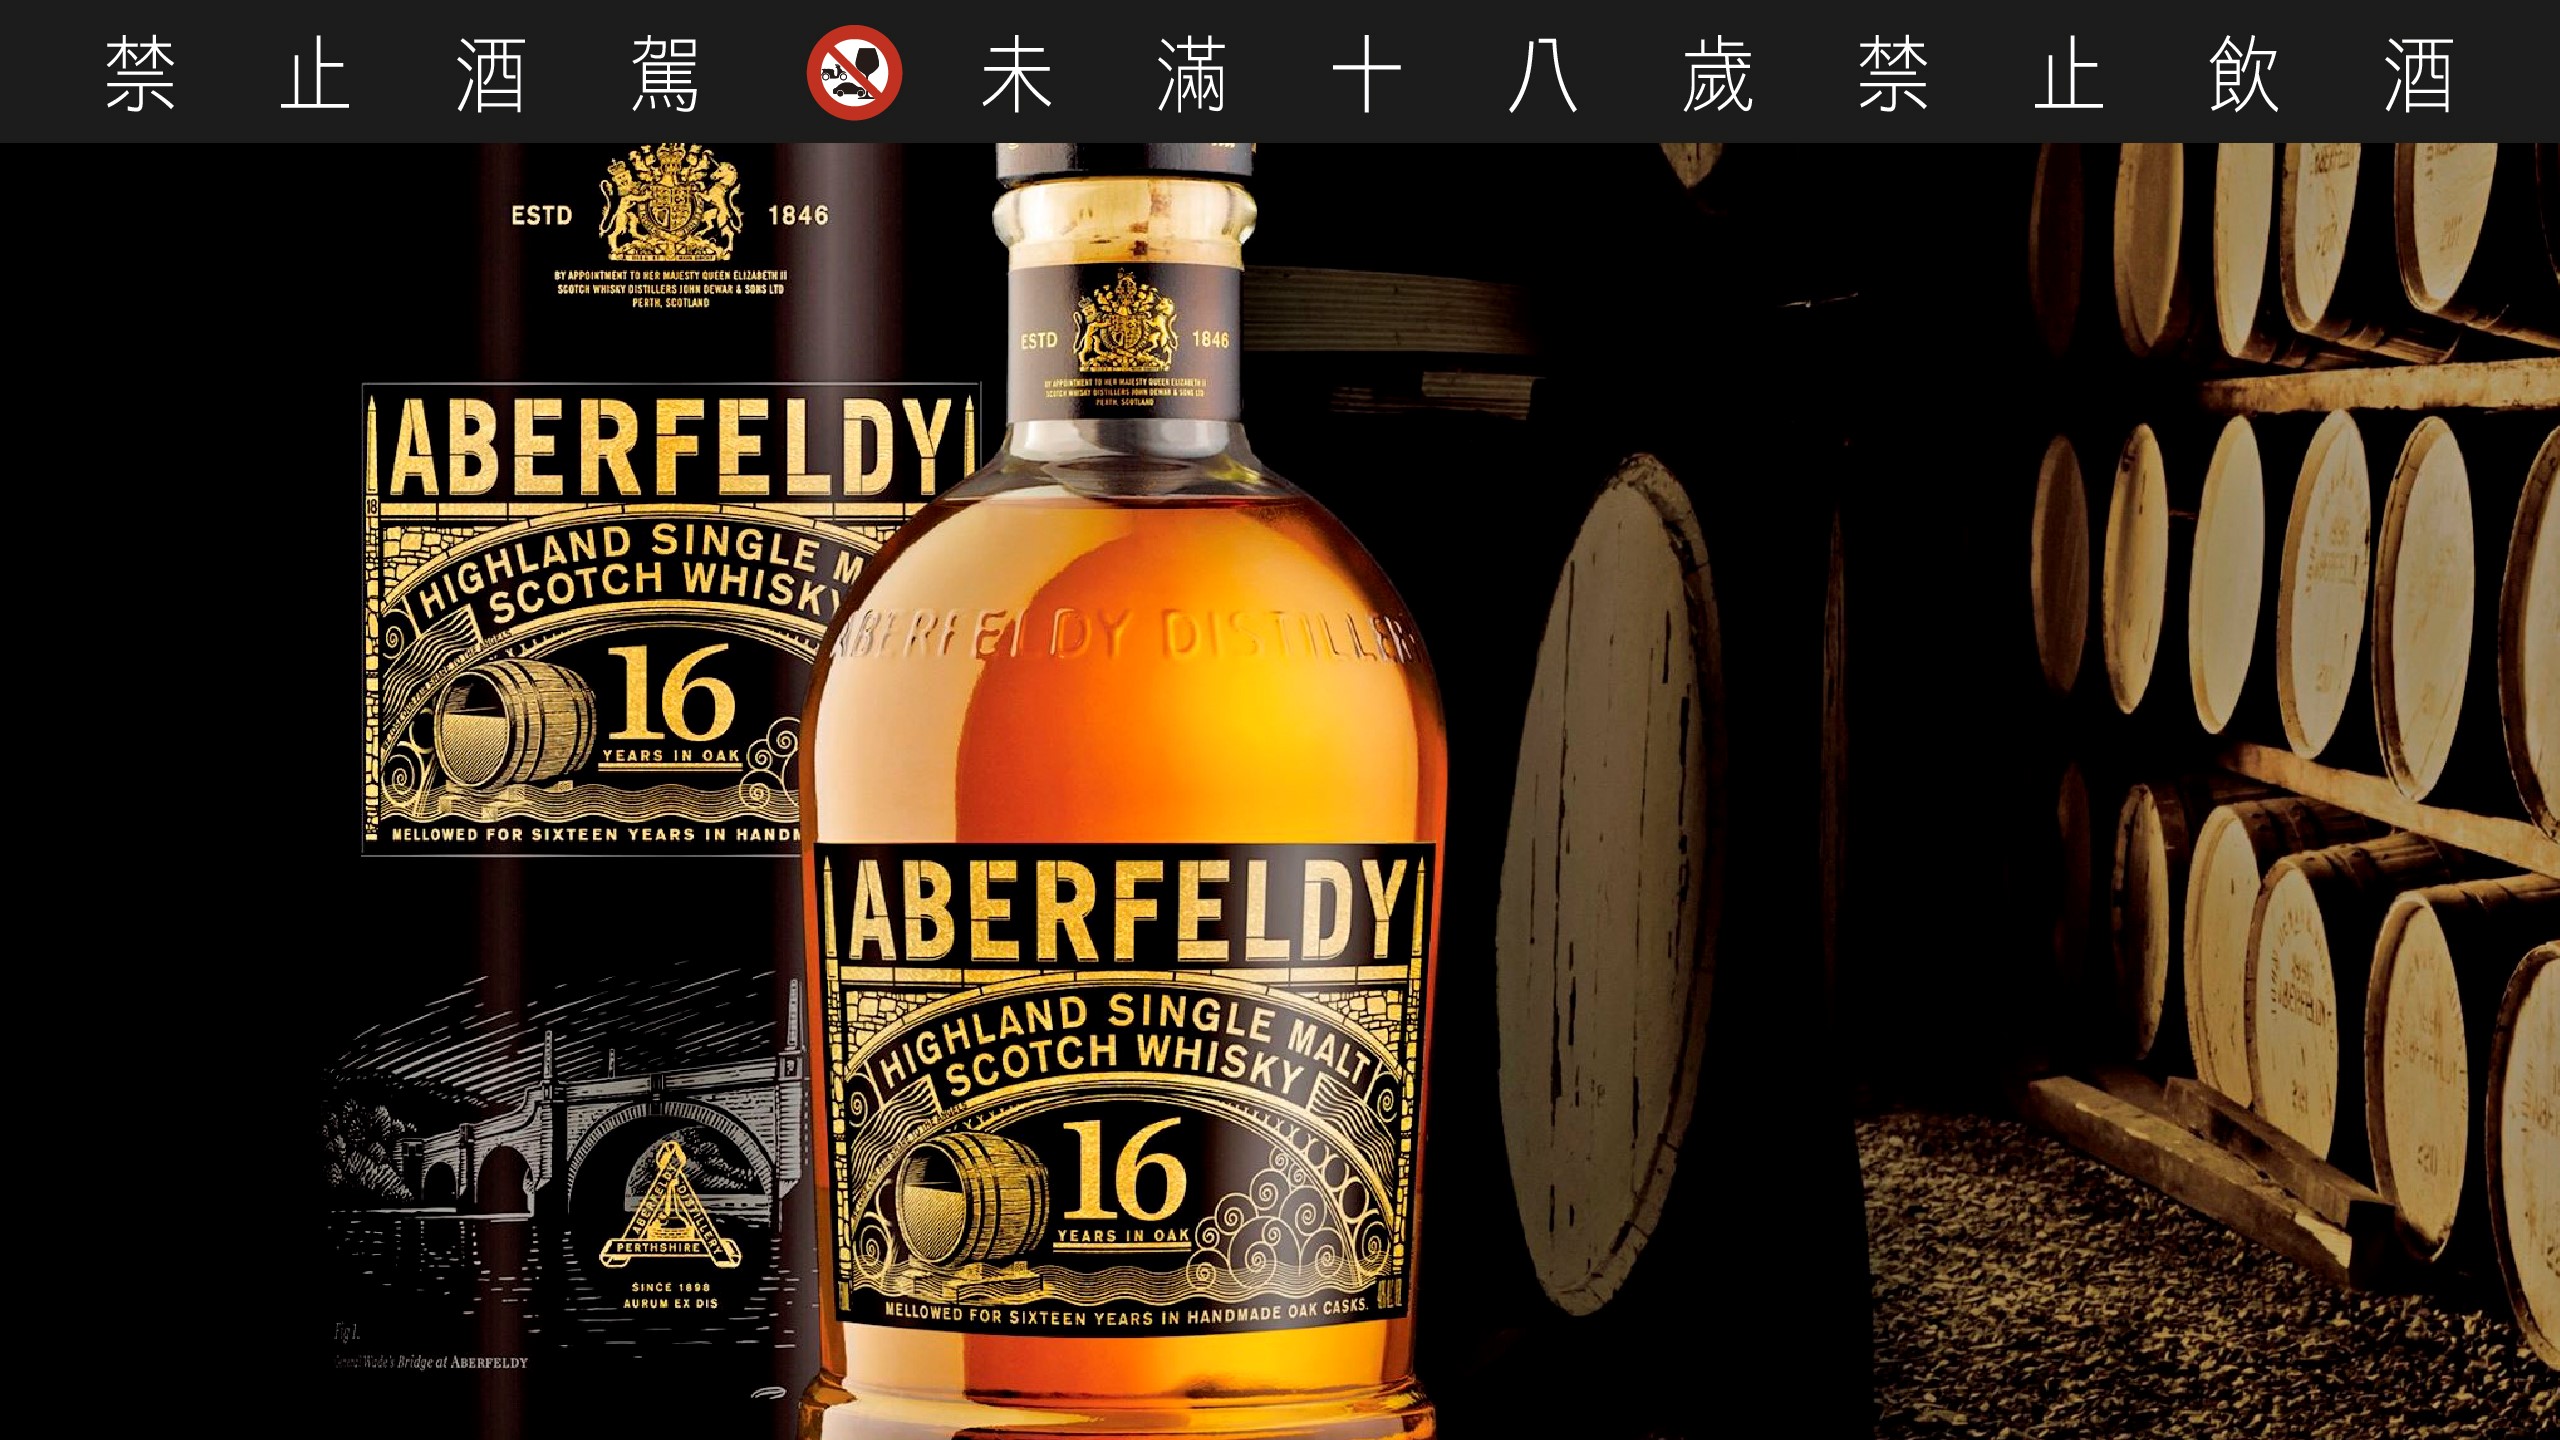 艾柏迪 16 年單一麥芽蘇格蘭威士忌，先在波本桶熟成 16 年後移到雪莉桶中熟成，有著雪莉桶特有的細緻優雅，卻不會過於甜膩。